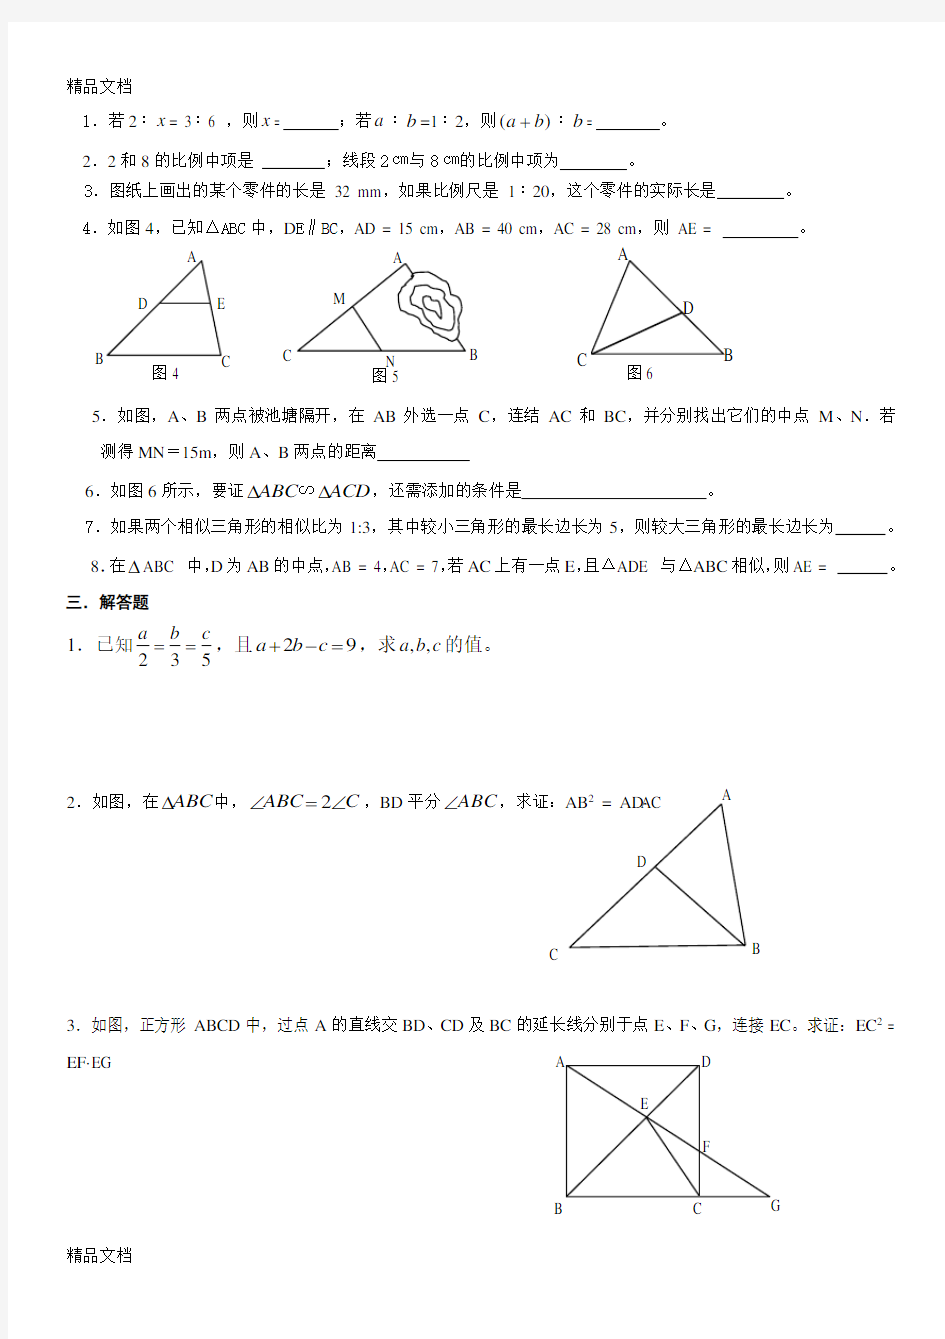 最新相似三角形基础练习题